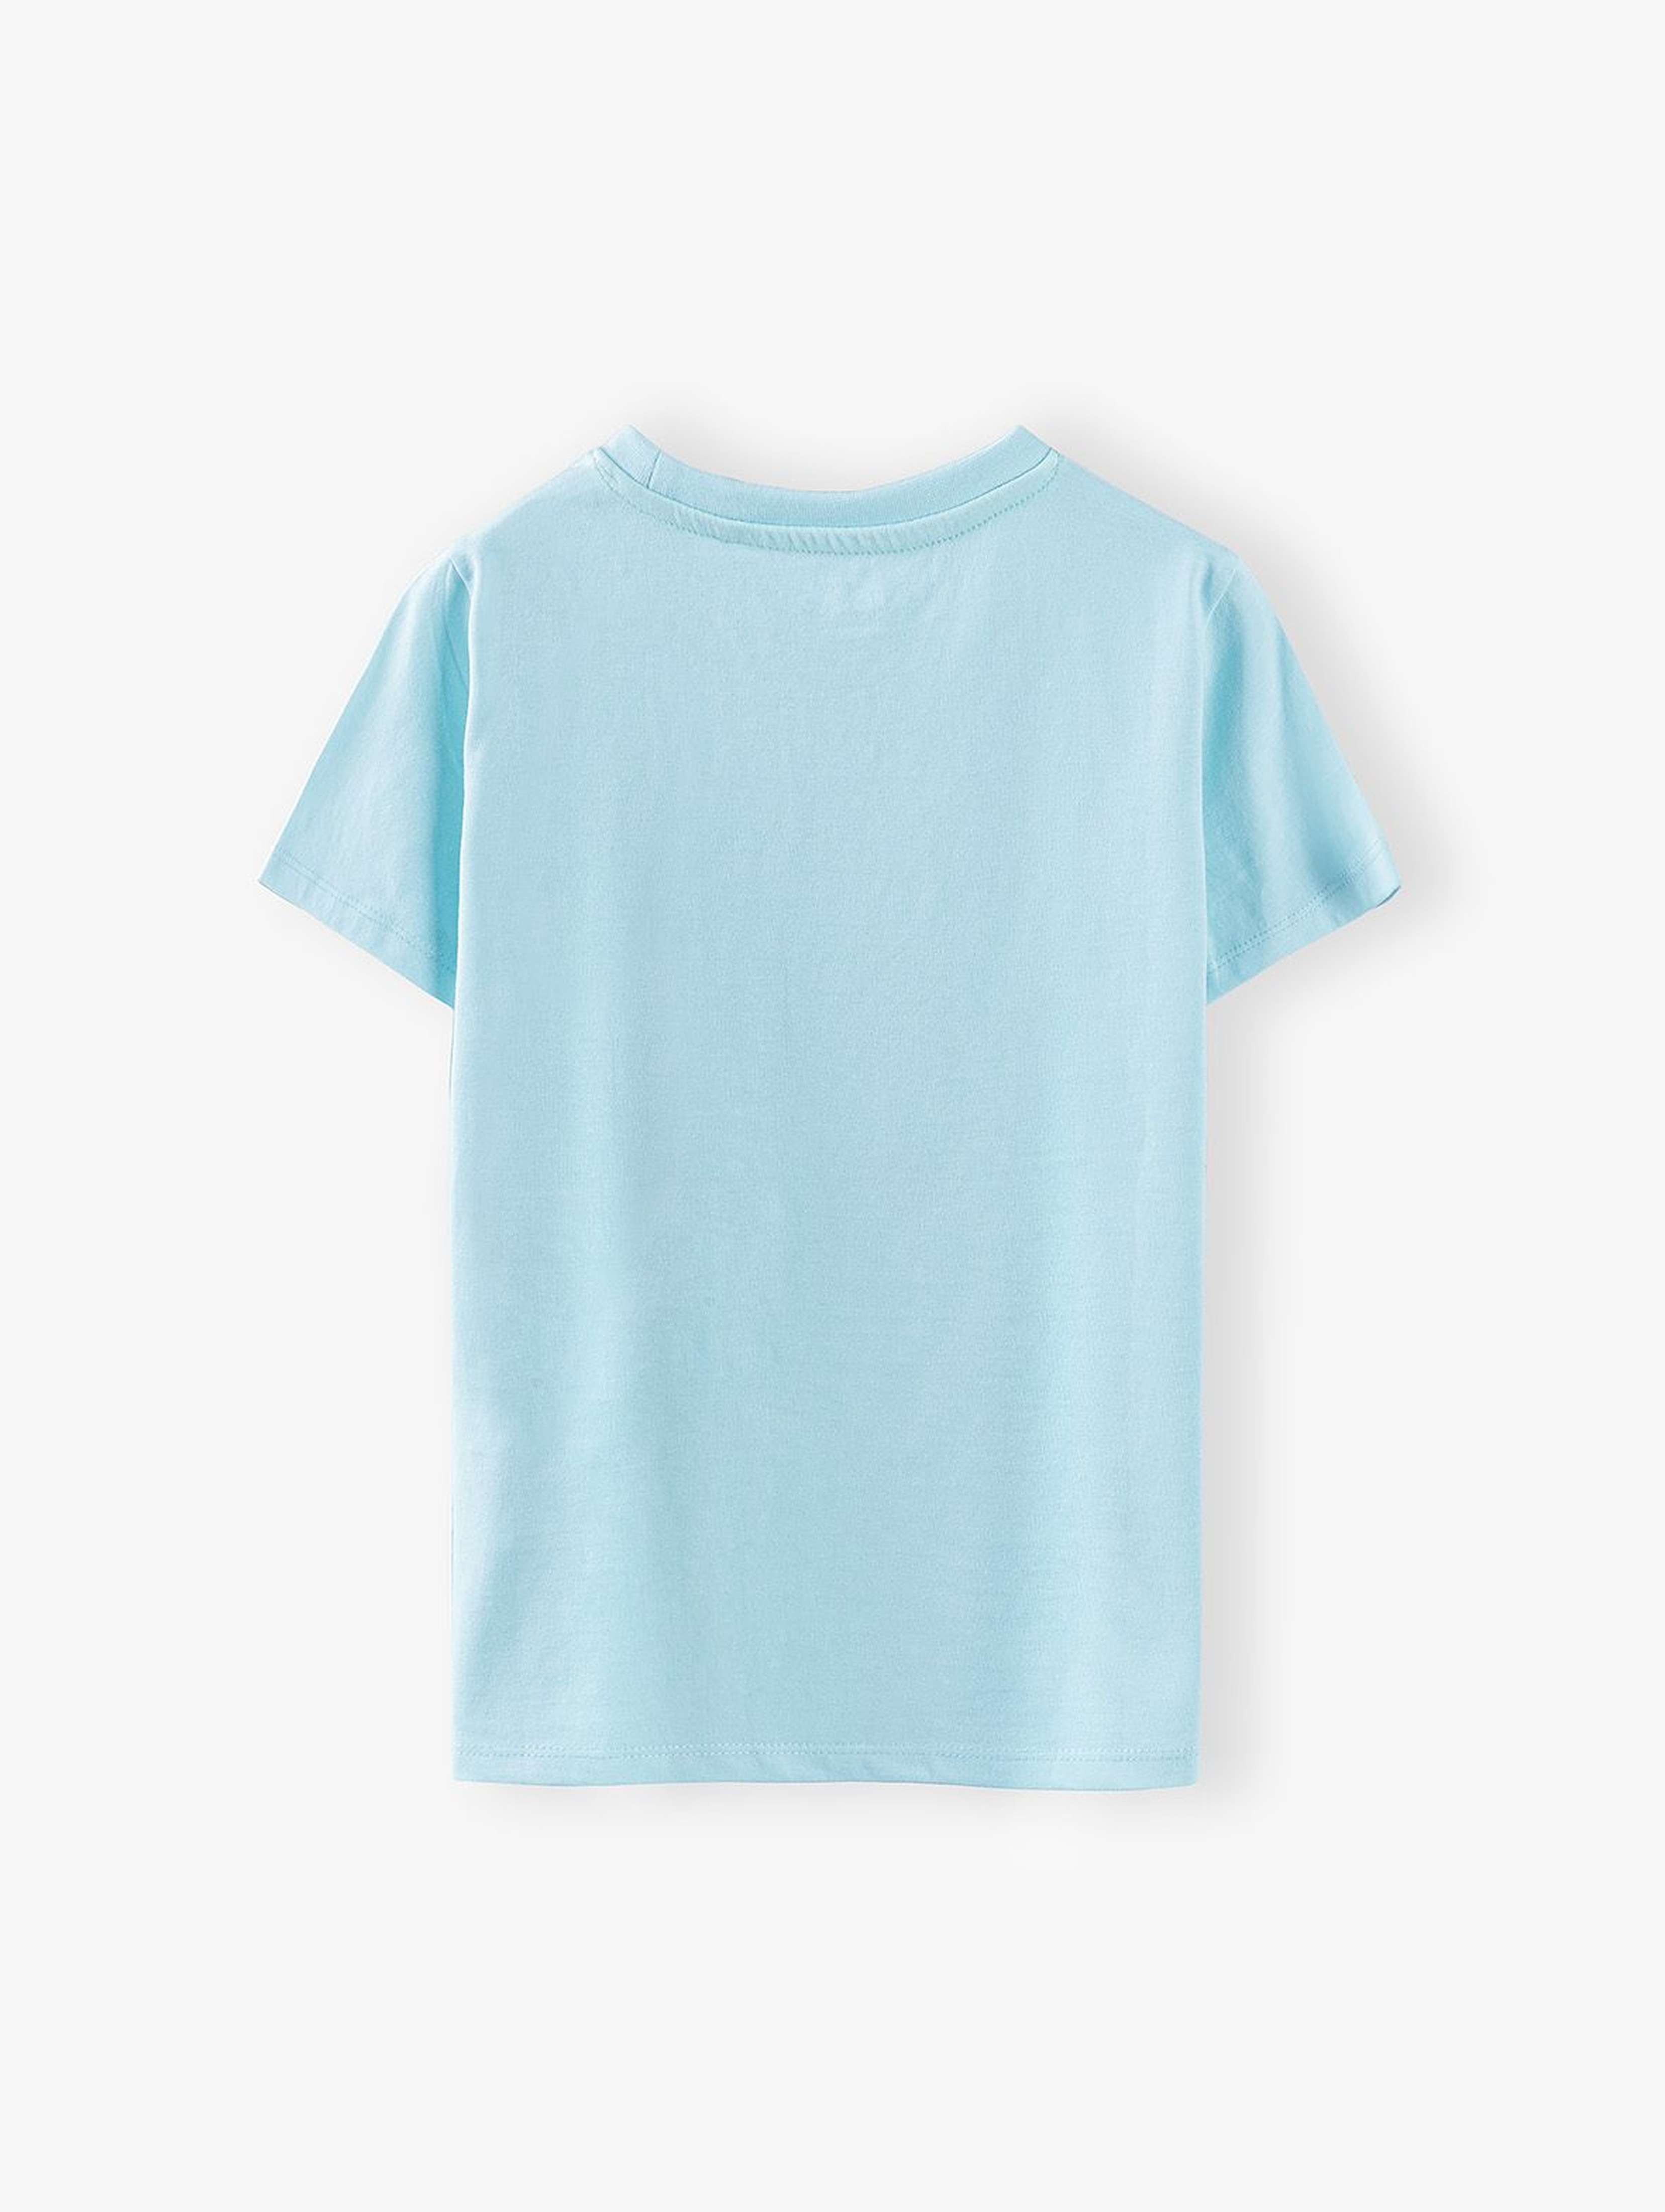 T-shirt chłopięcy w kolorze błękitnym z nadrukiem